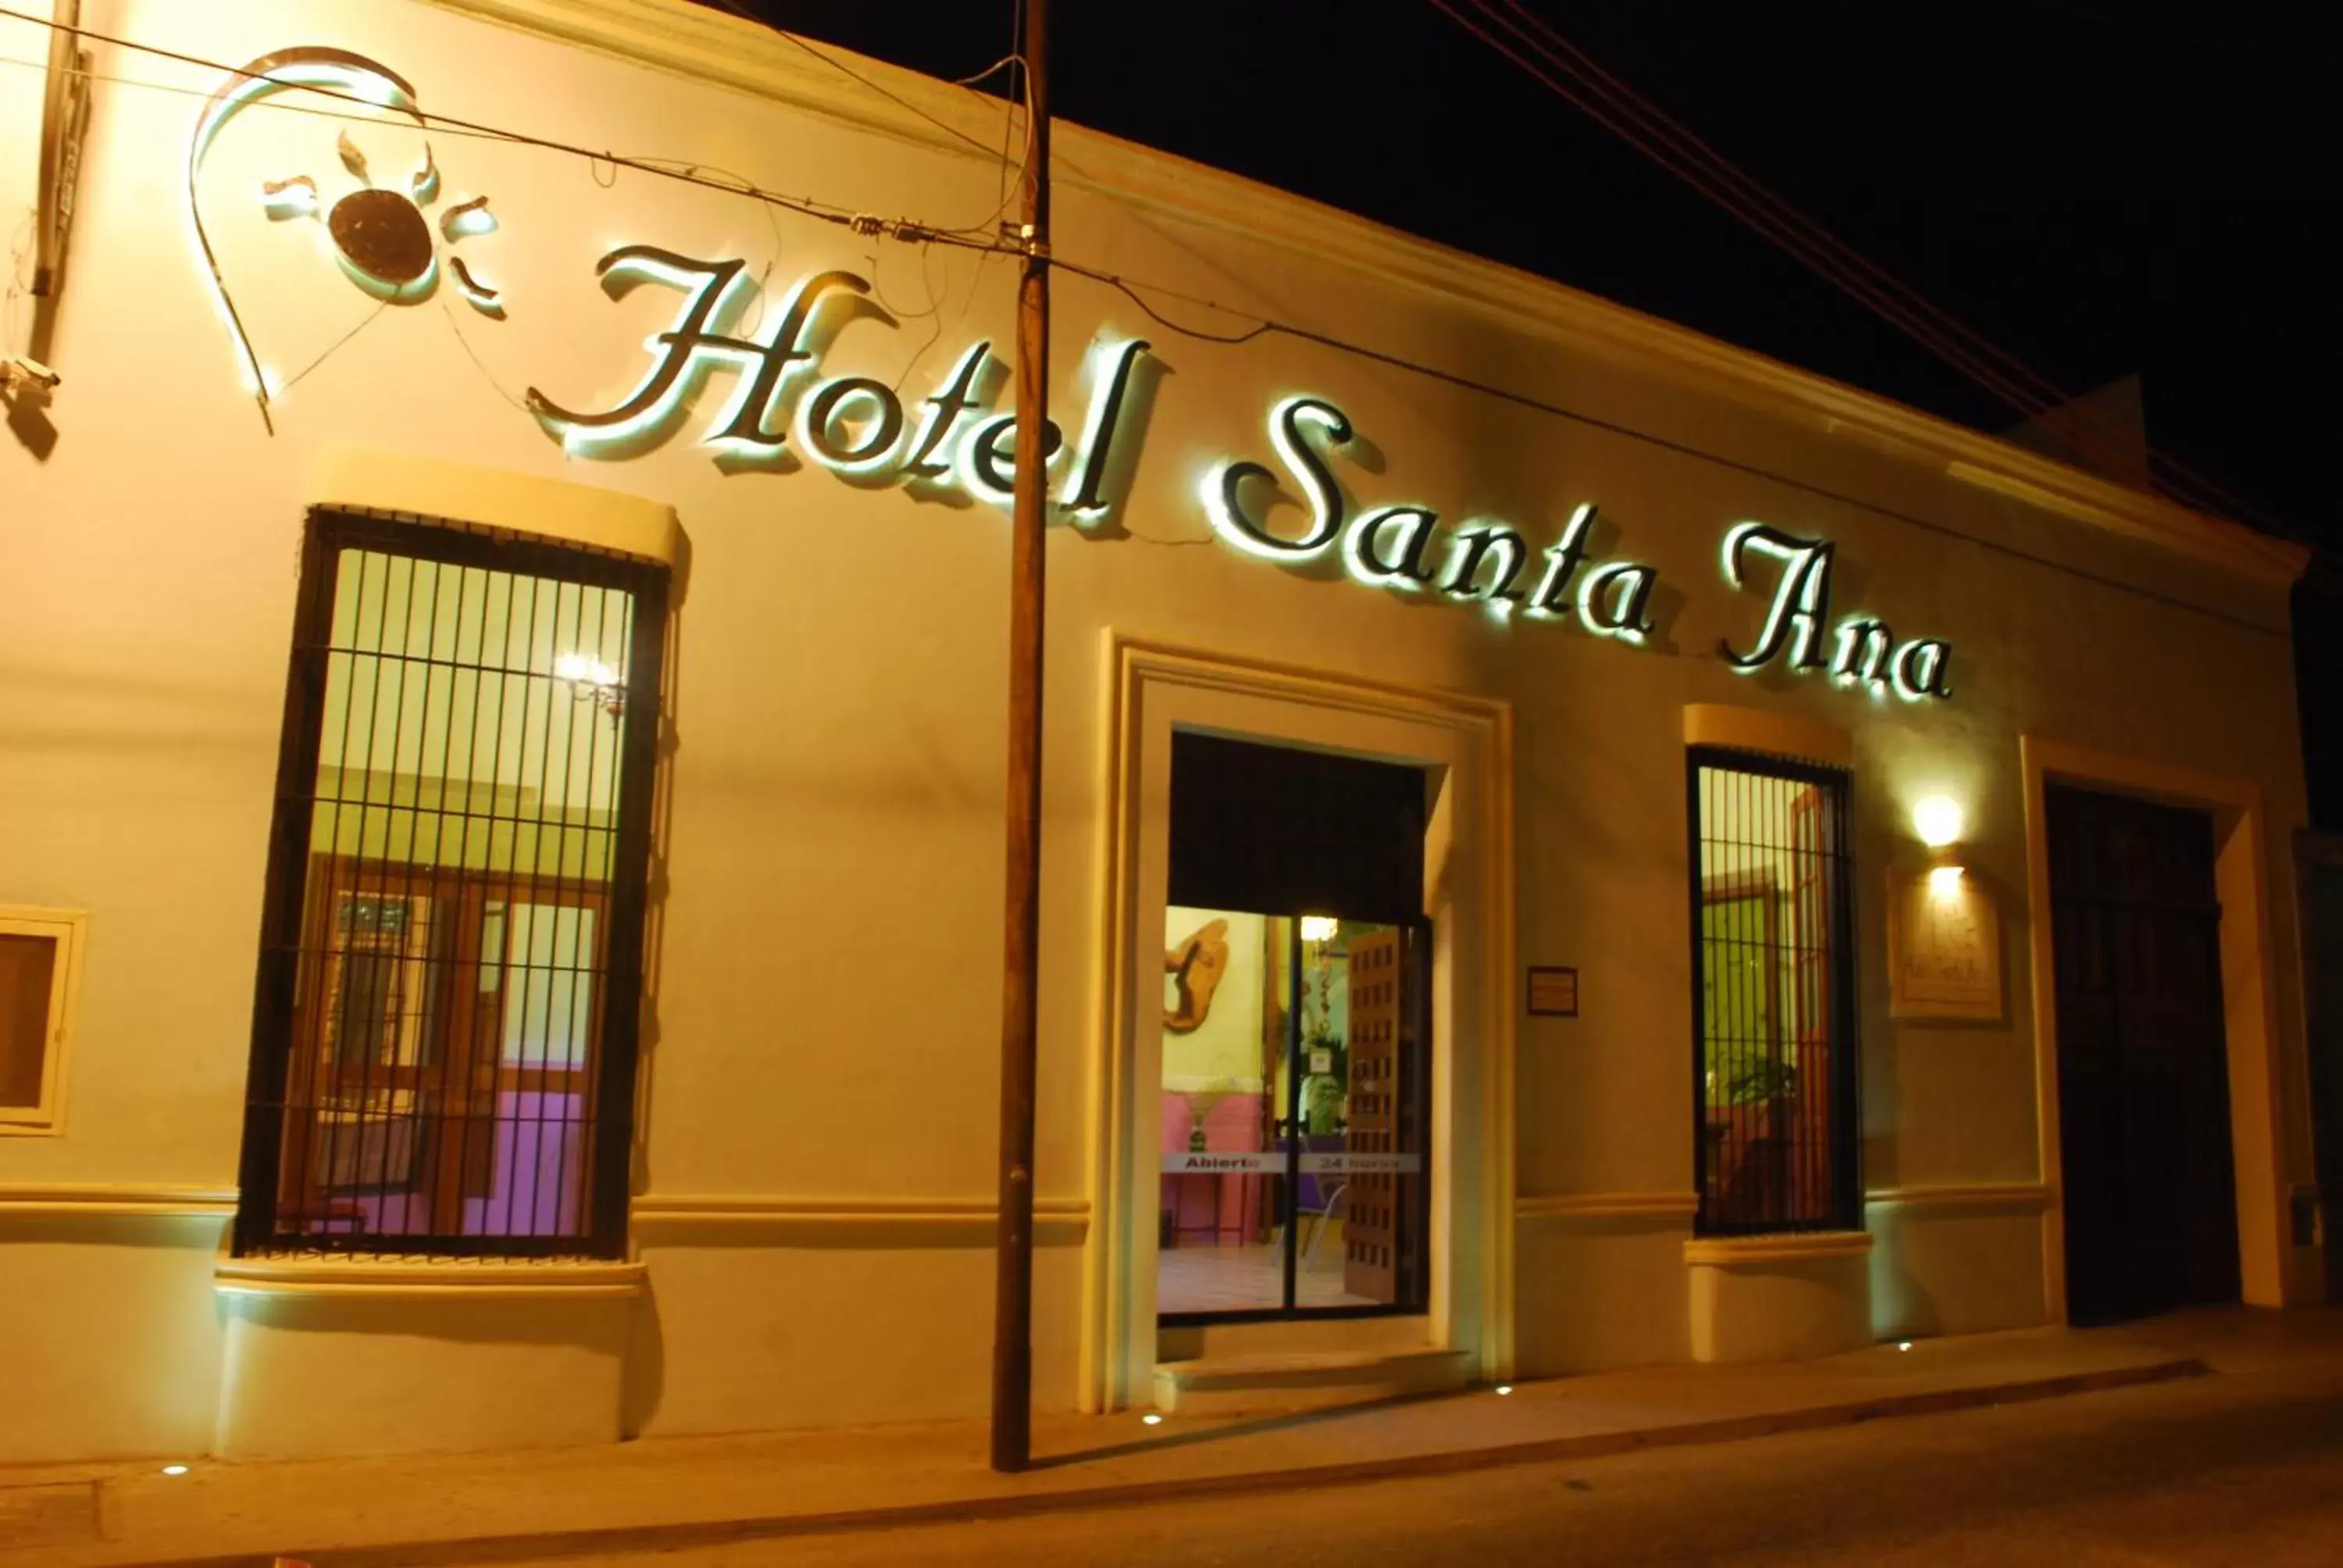 Facade/entrance in Hotel Santa Ana